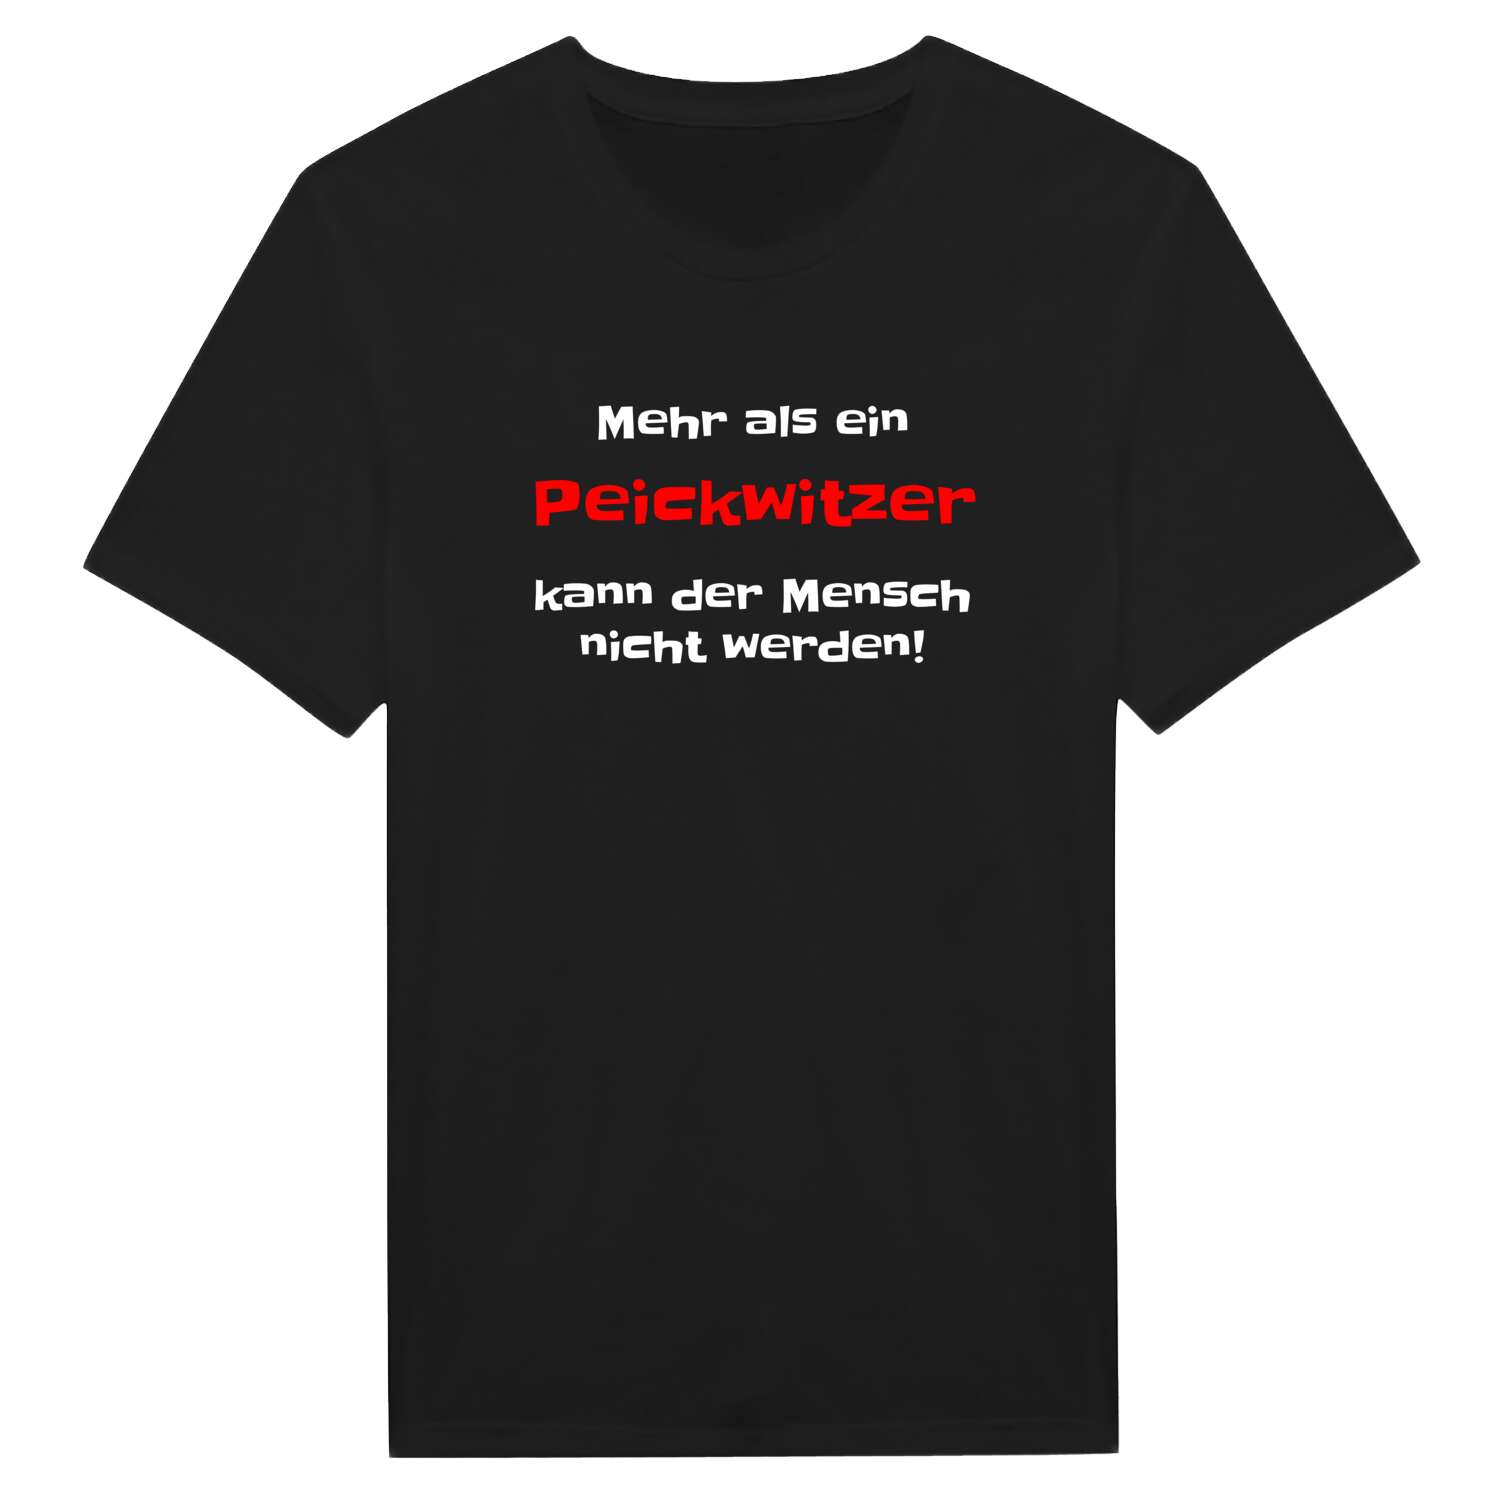 Peickwitz T-Shirt »Mehr als ein«